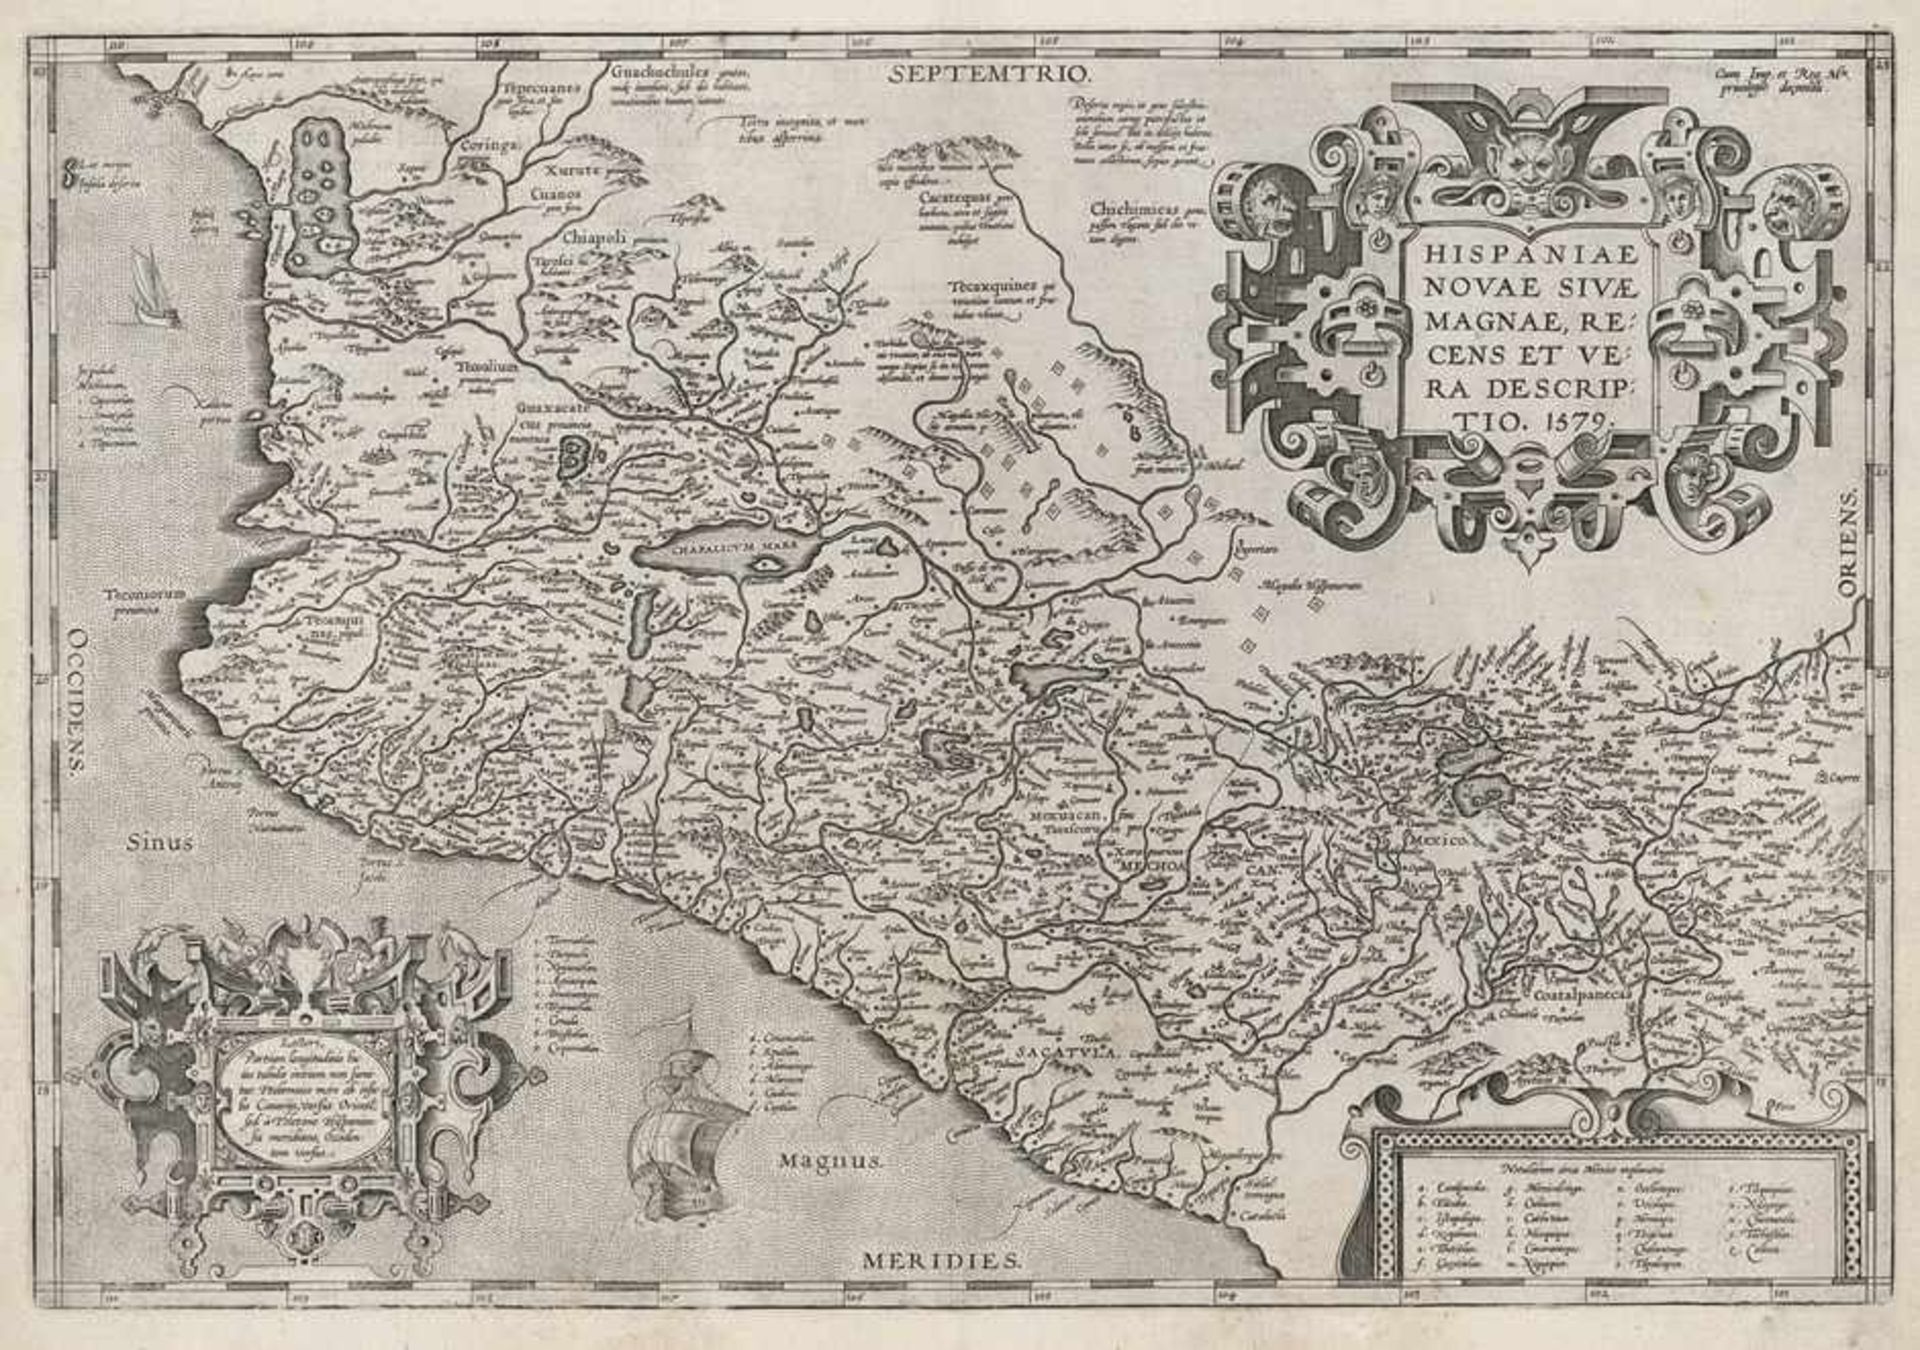 Ortelius, Abraham: Hispaniae novaeOrtelius, Abraham. Hispaniae novae sivae magnae recens et bera